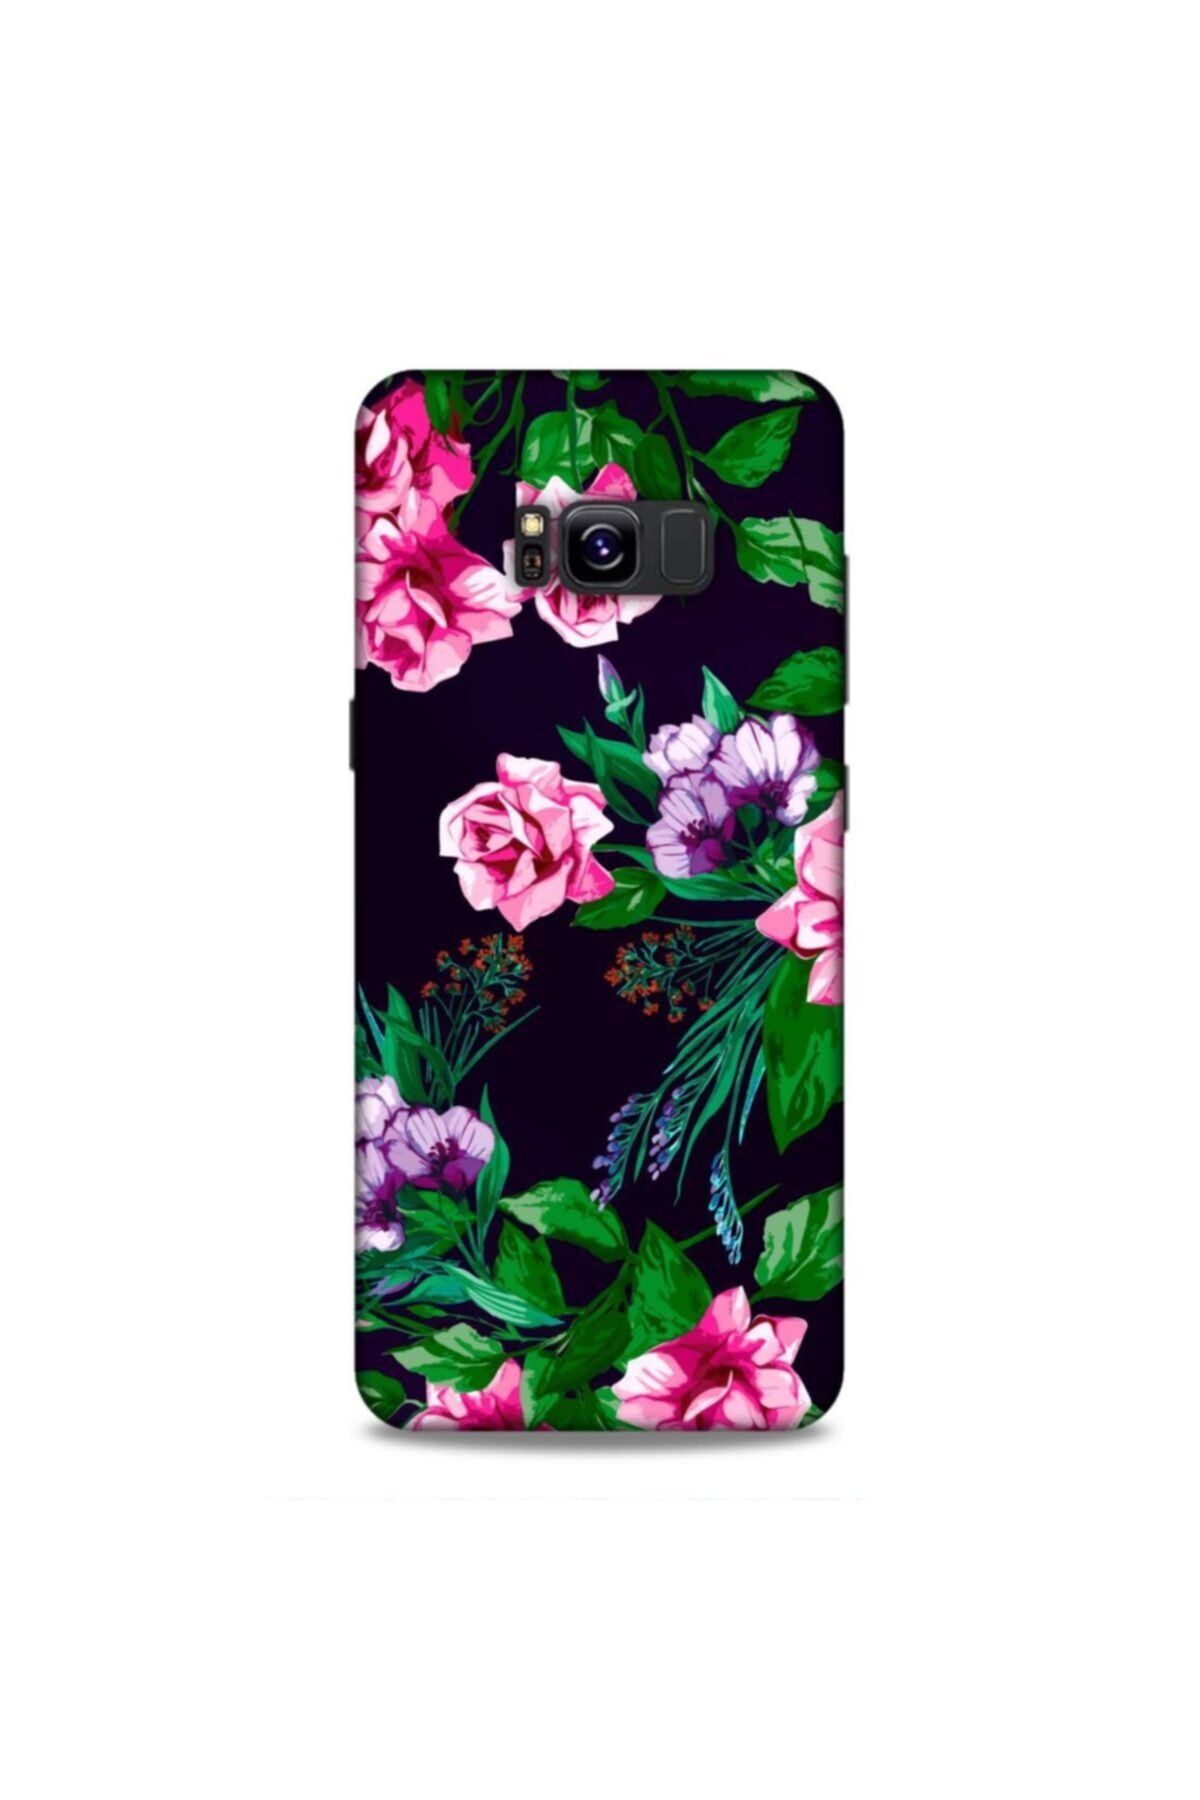 Pickcase Samsung Galaxy S8 Plus Kılıf Desenli Arka Kapak Pembe Çiçekler